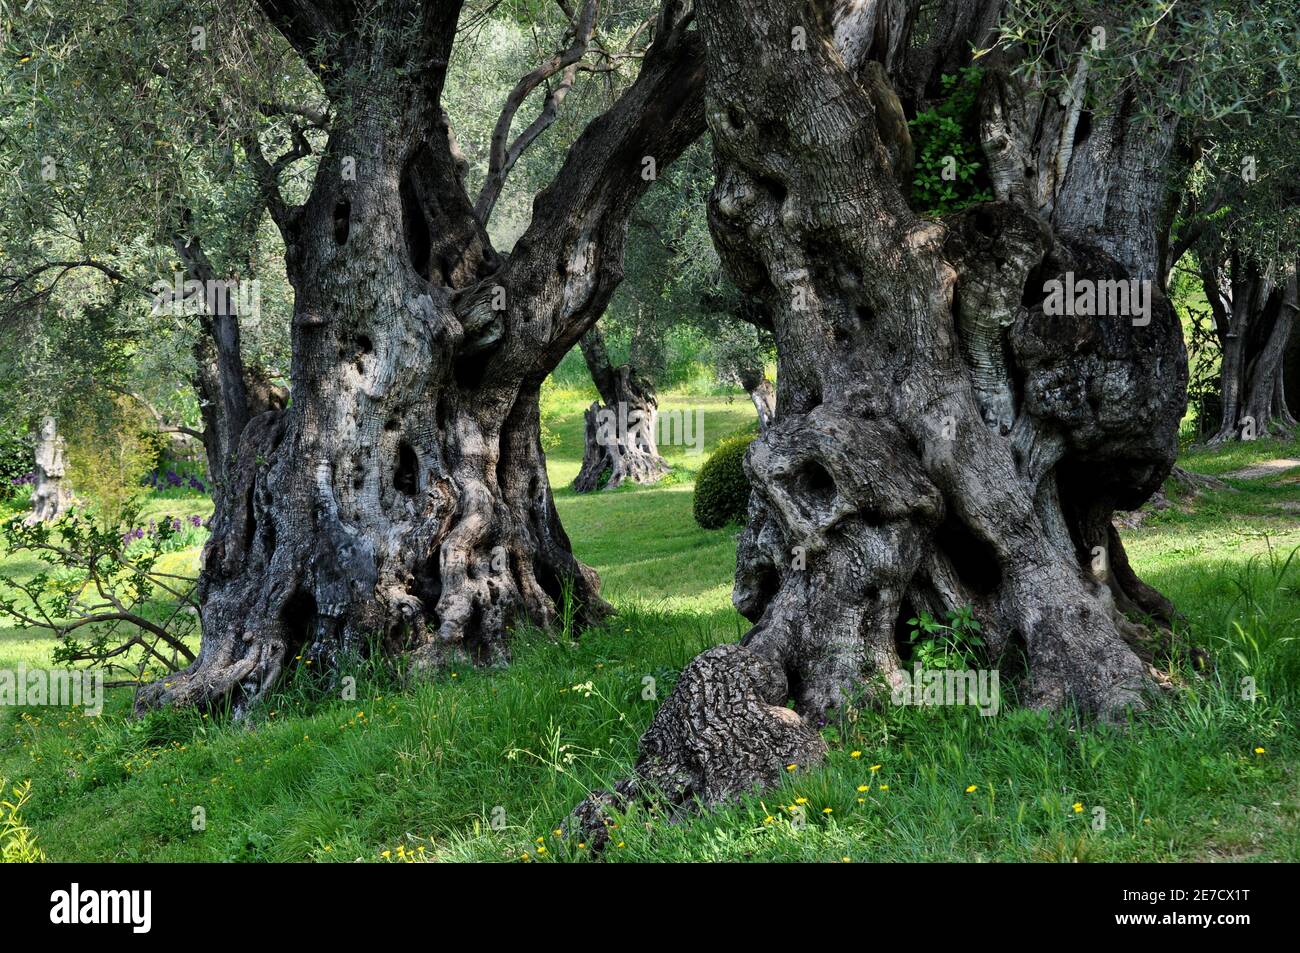 Francia, Cagnes sur Mer, en el hermoso parque de la casa Auguste Renoir son árboles de oliva de cien años de antigüedad con troncos nudosos muy imponente. Foto de stock